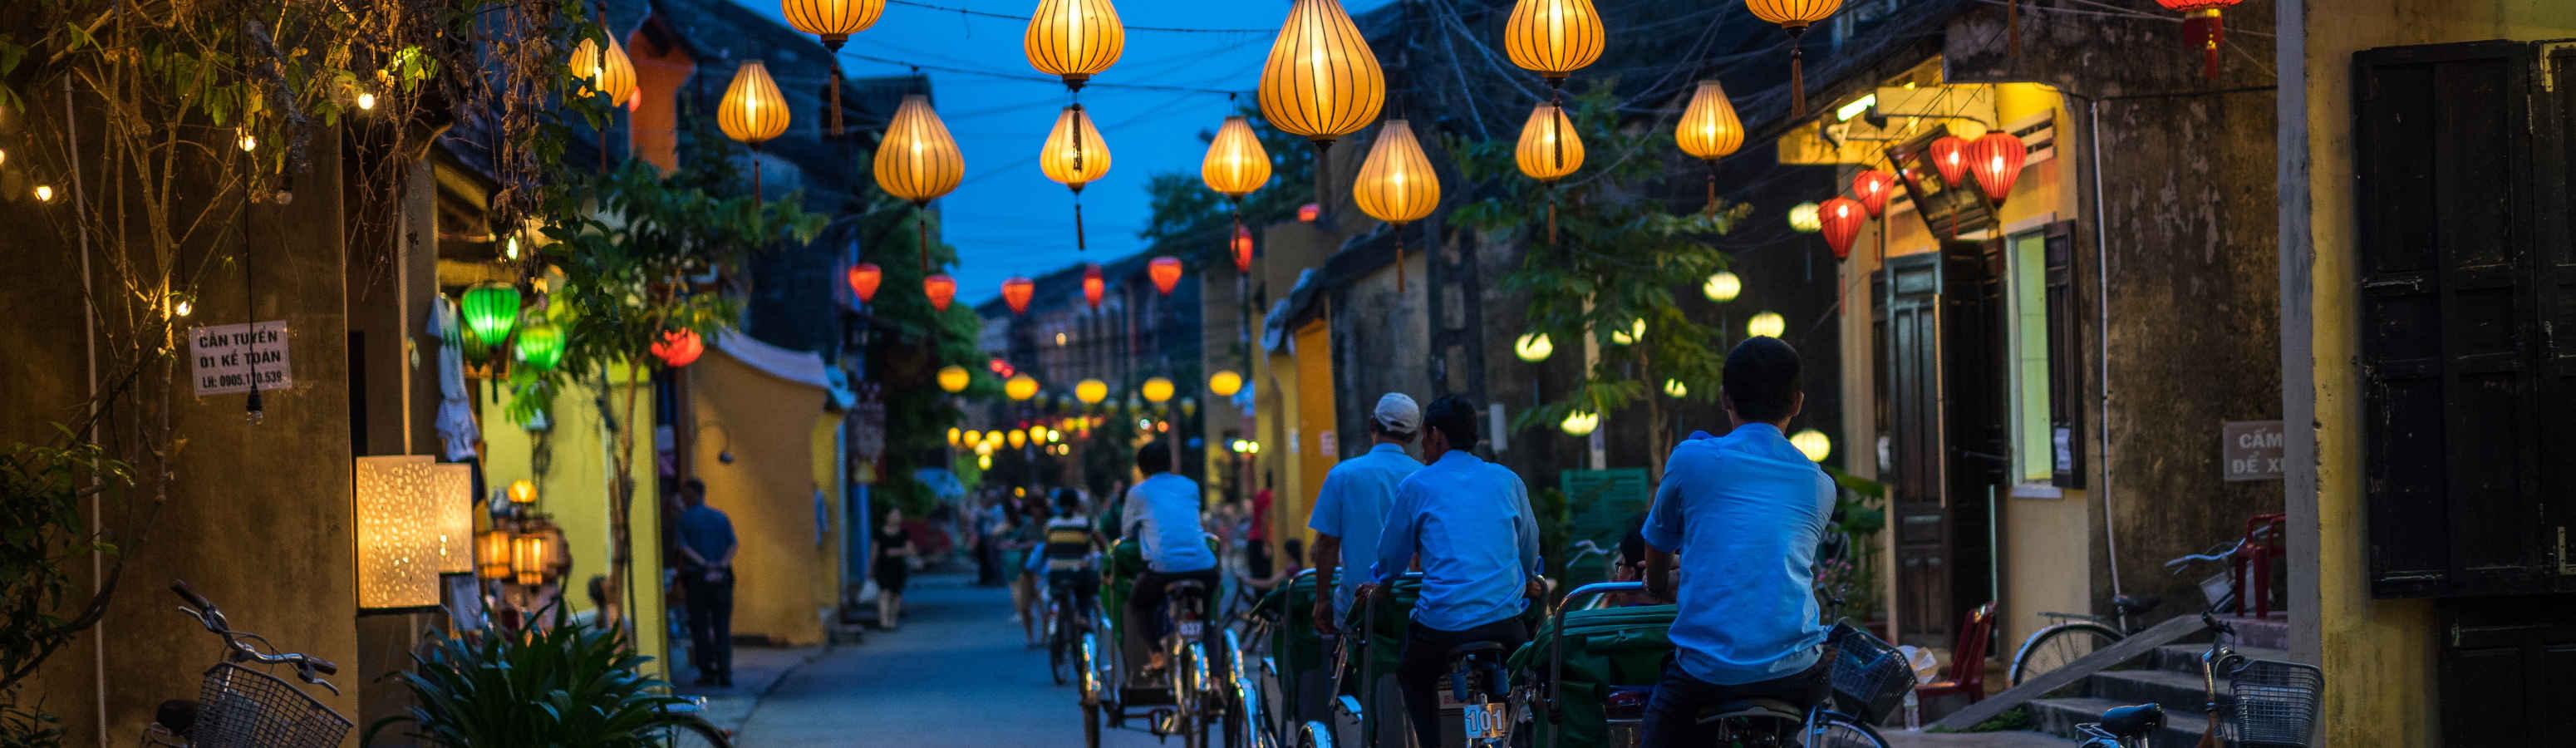 Tippek a vietnami utazásokhoz